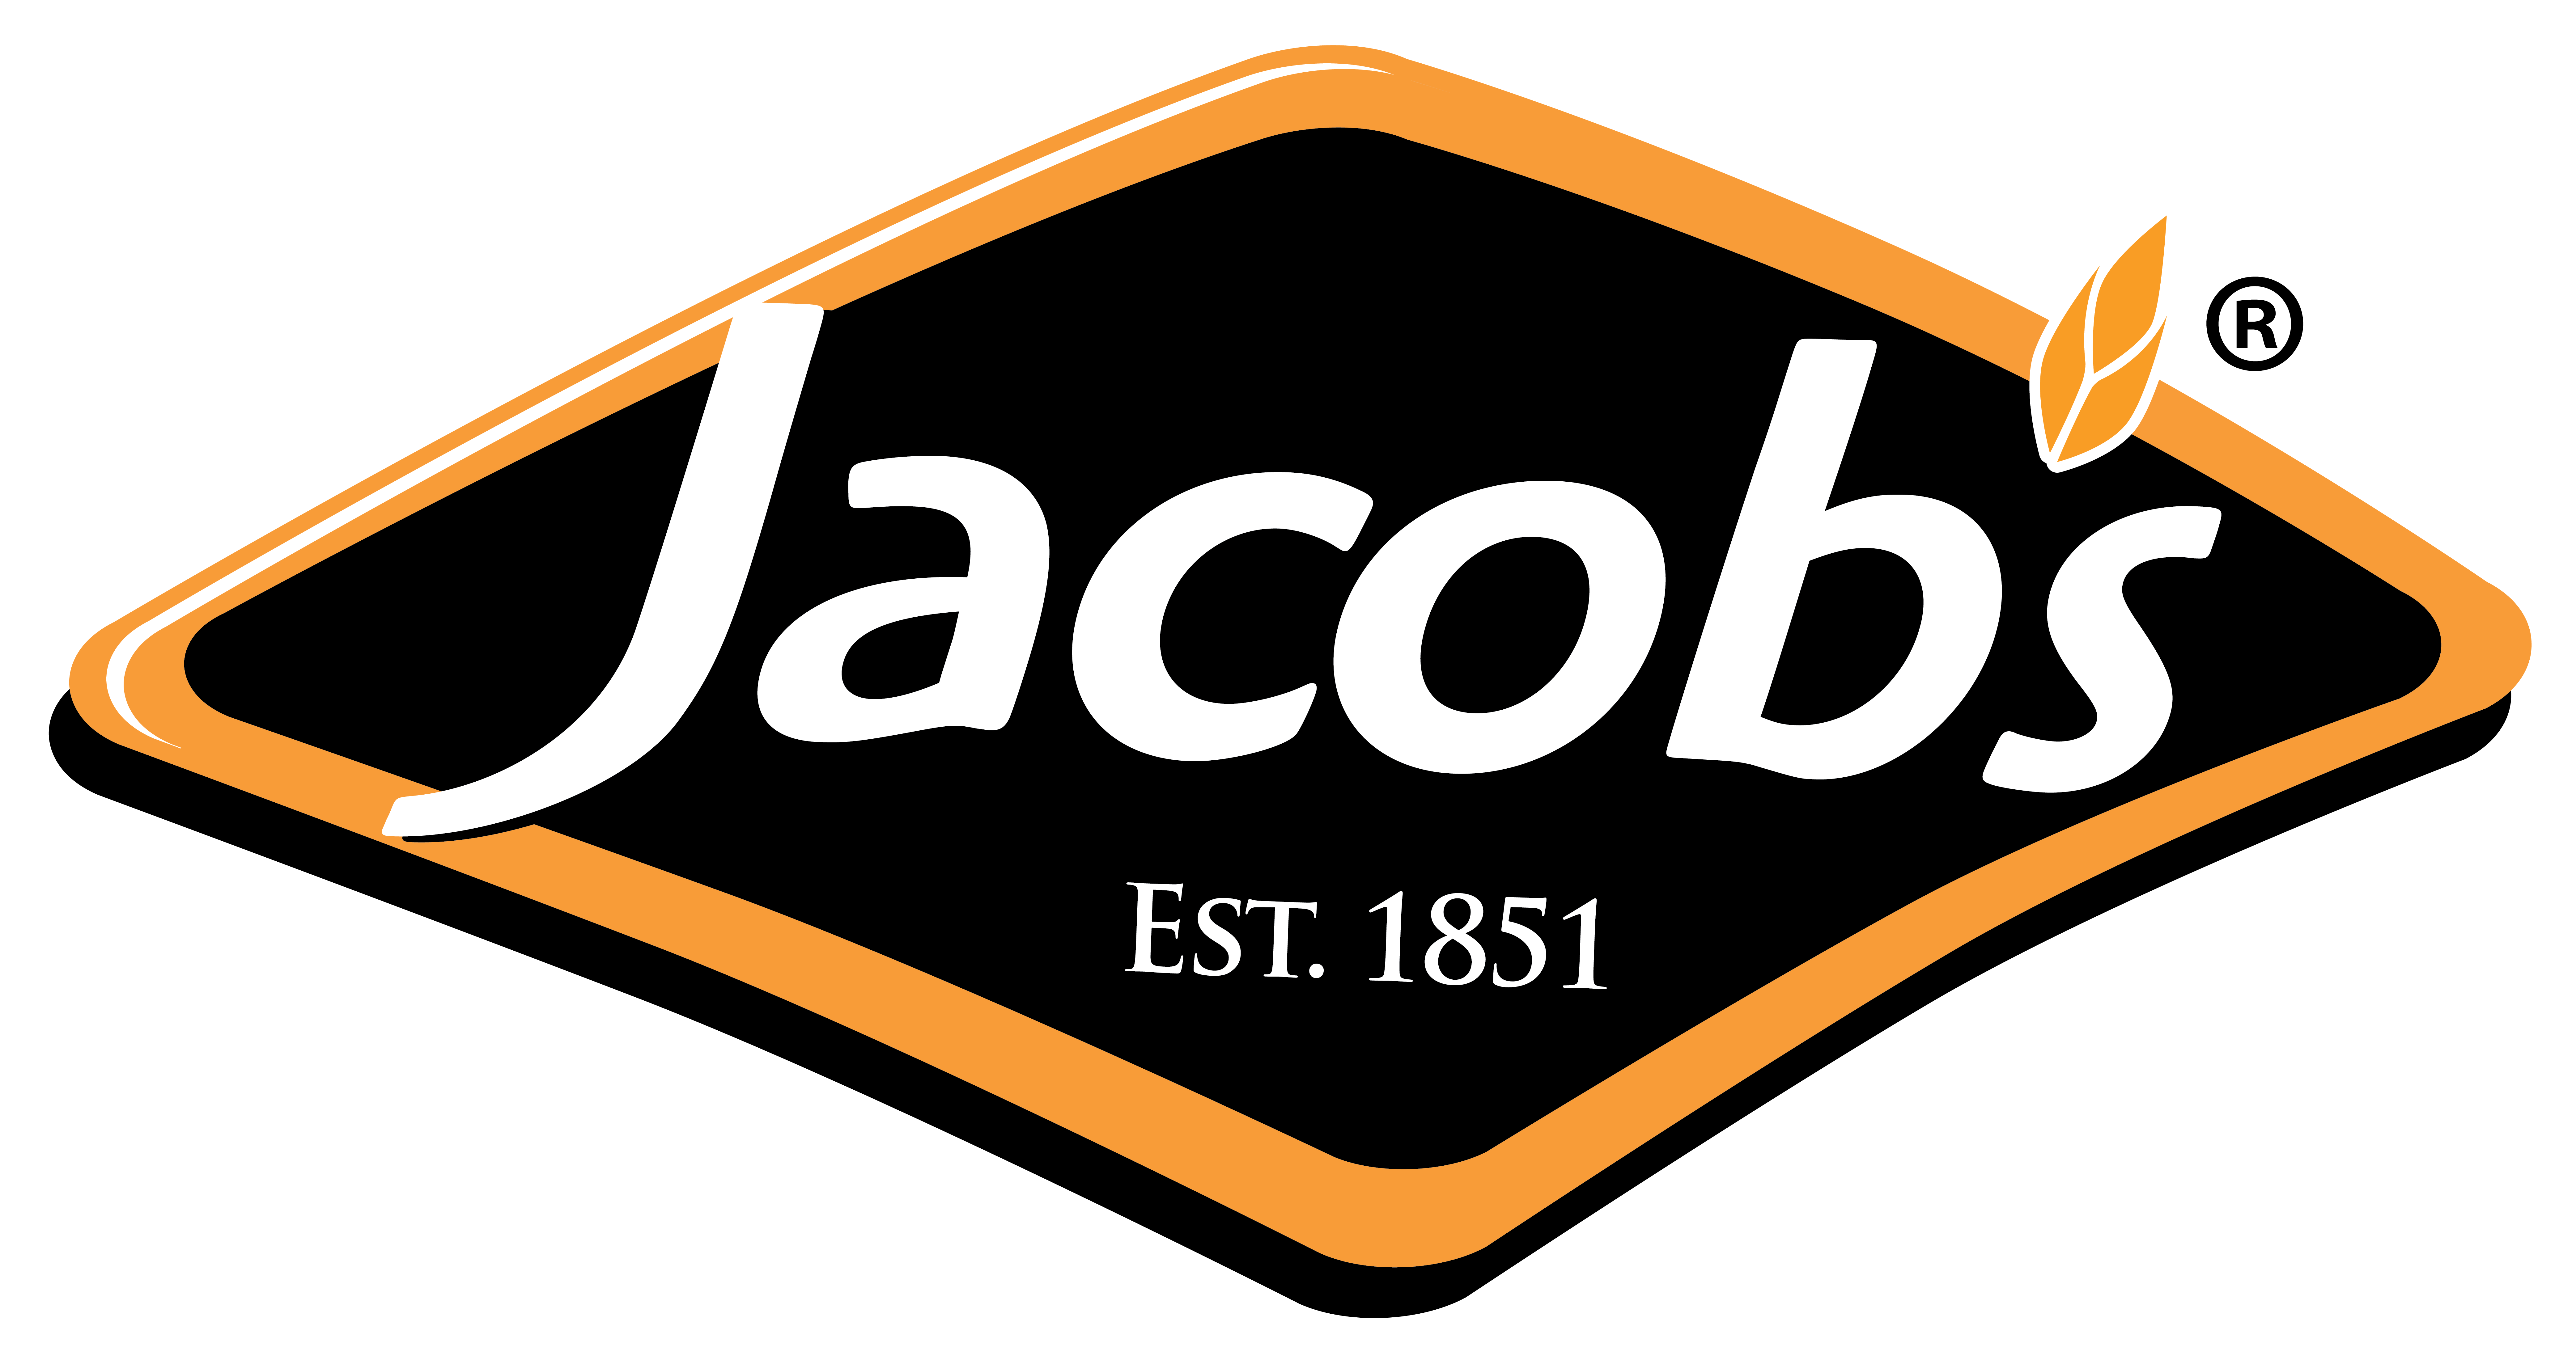 Jacob’s Biscuits